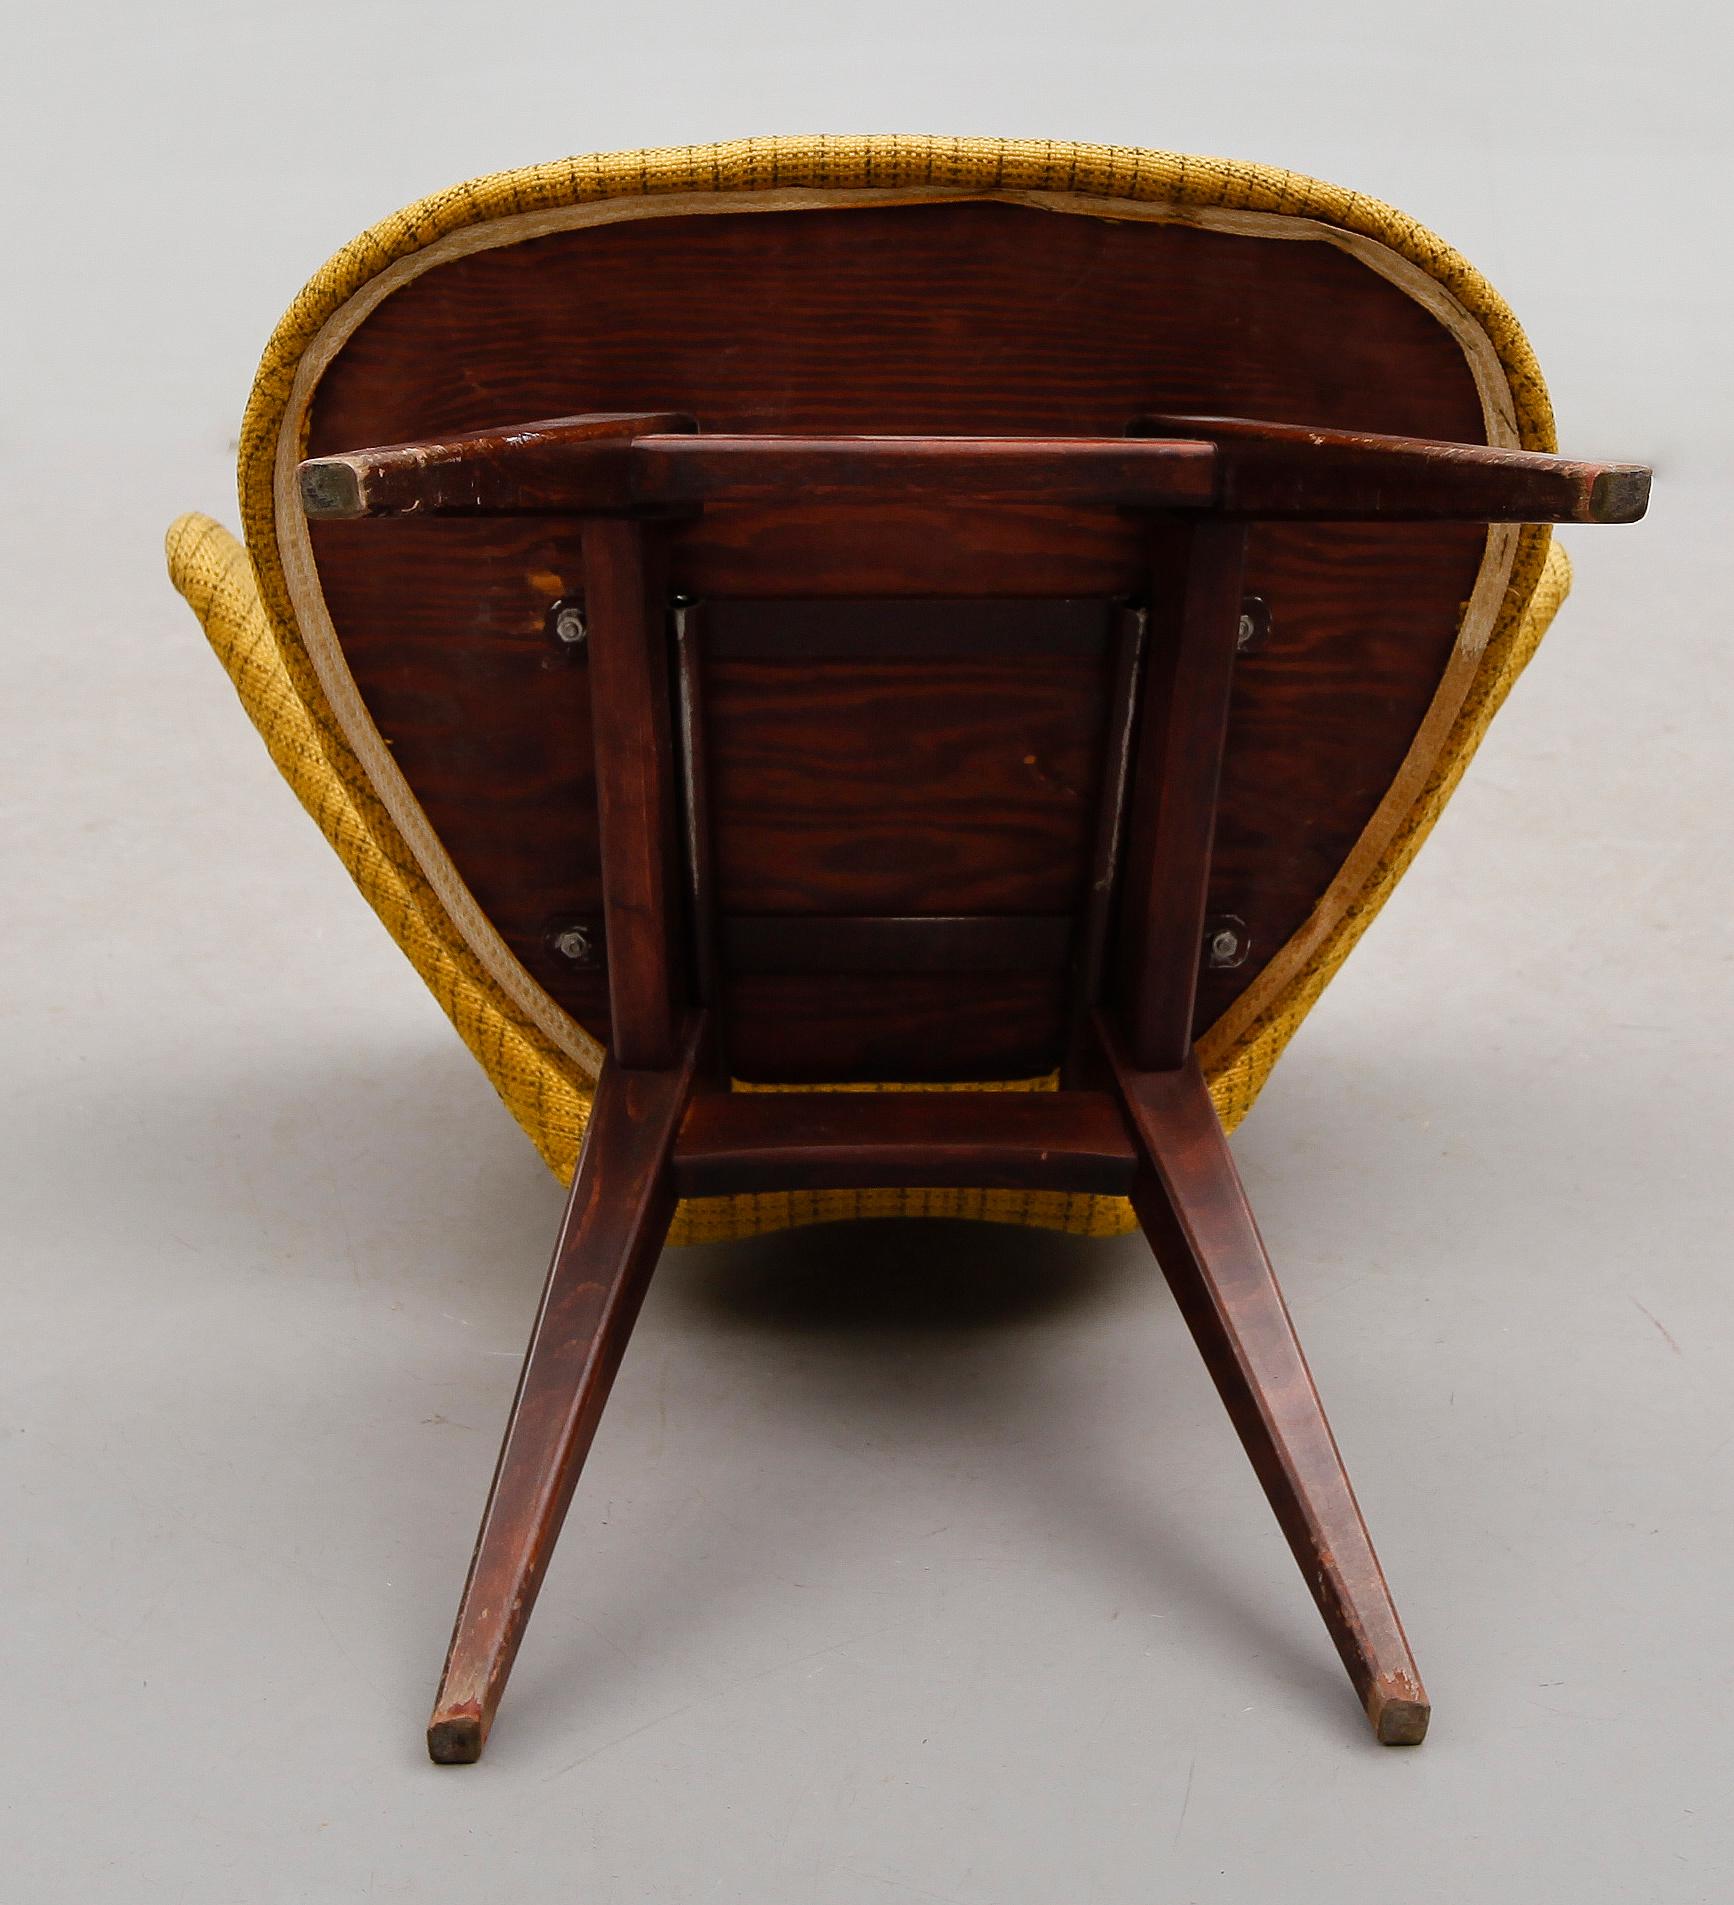 Chaise à oreilles Sigfrid Ljungqvist pour Mobelfabrik , Suède , 1950
Cette chaise rare a été fabriquée par  Möbelfabrik à Habo, en Suède. Le fauteuil a été nommé modèle Ving/300 et a été produit en 1958. Le dossier en forme d'aile, avec ses lignes